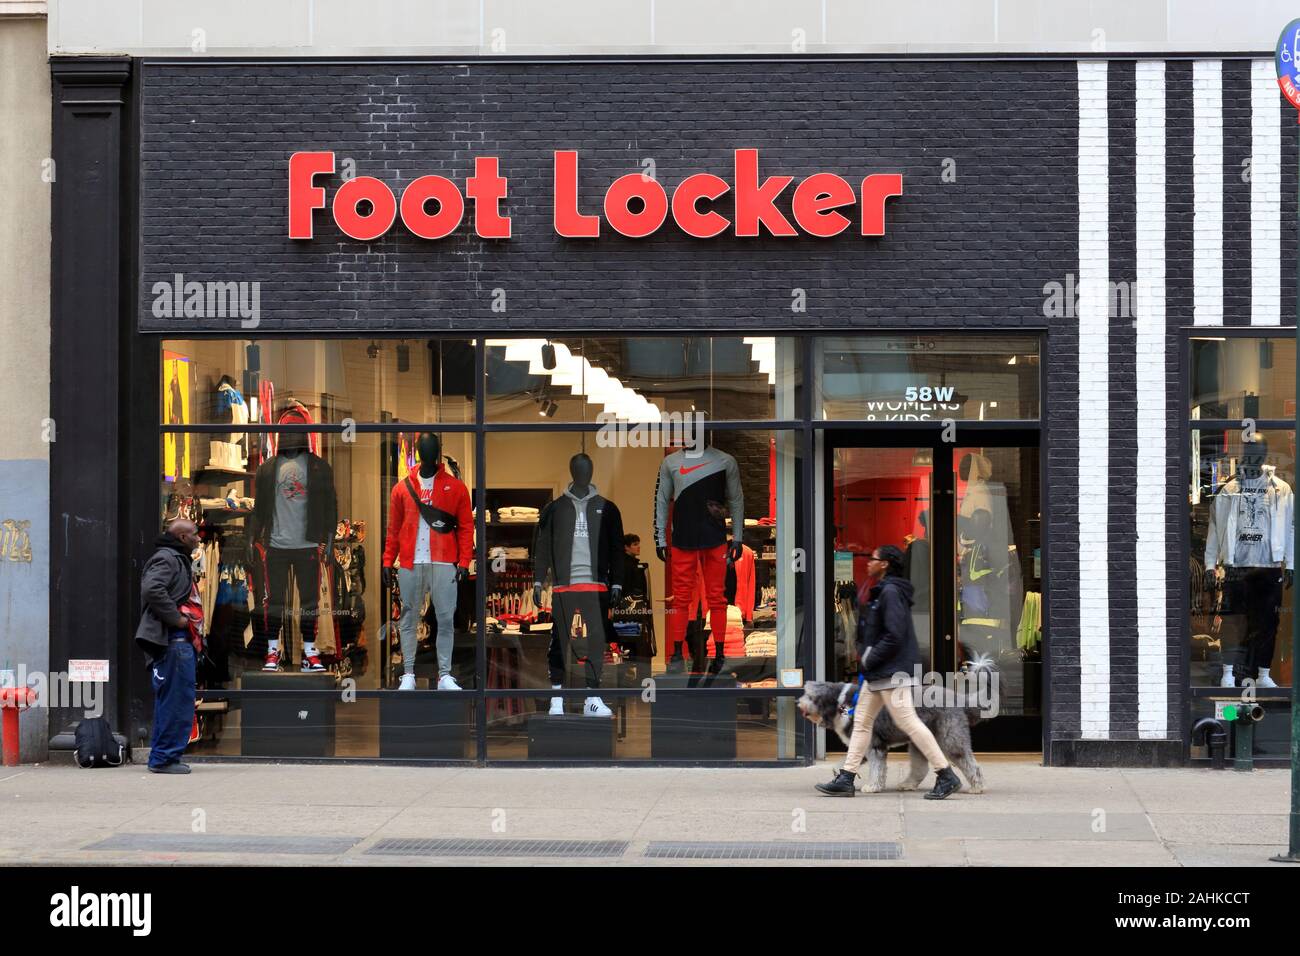 Foot Locker, 58 West 14th Street, New York, NY. aussen Storefront von Schuhgeschäft und athletische Abnutzung in Manhattan. Stockfoto